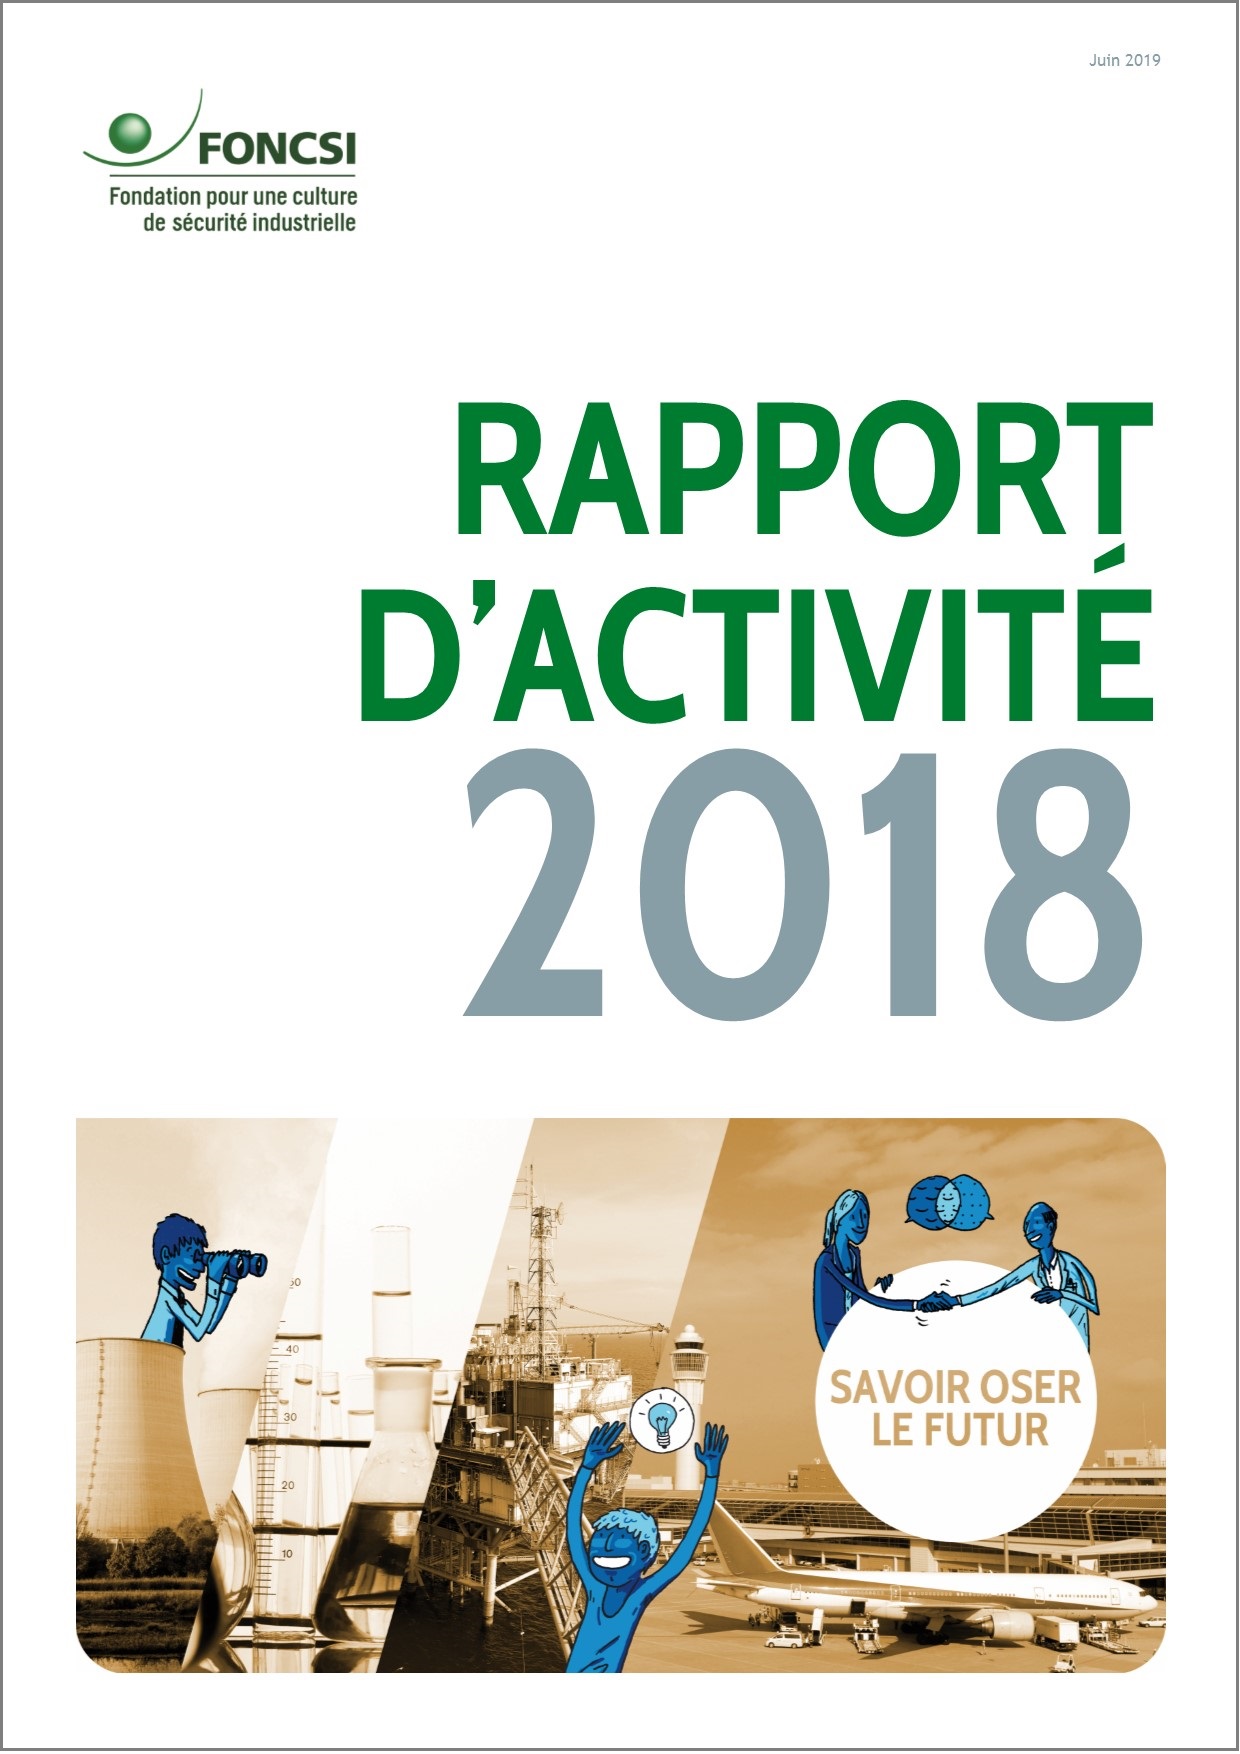 Le rapport d’activité 2018 est disponible